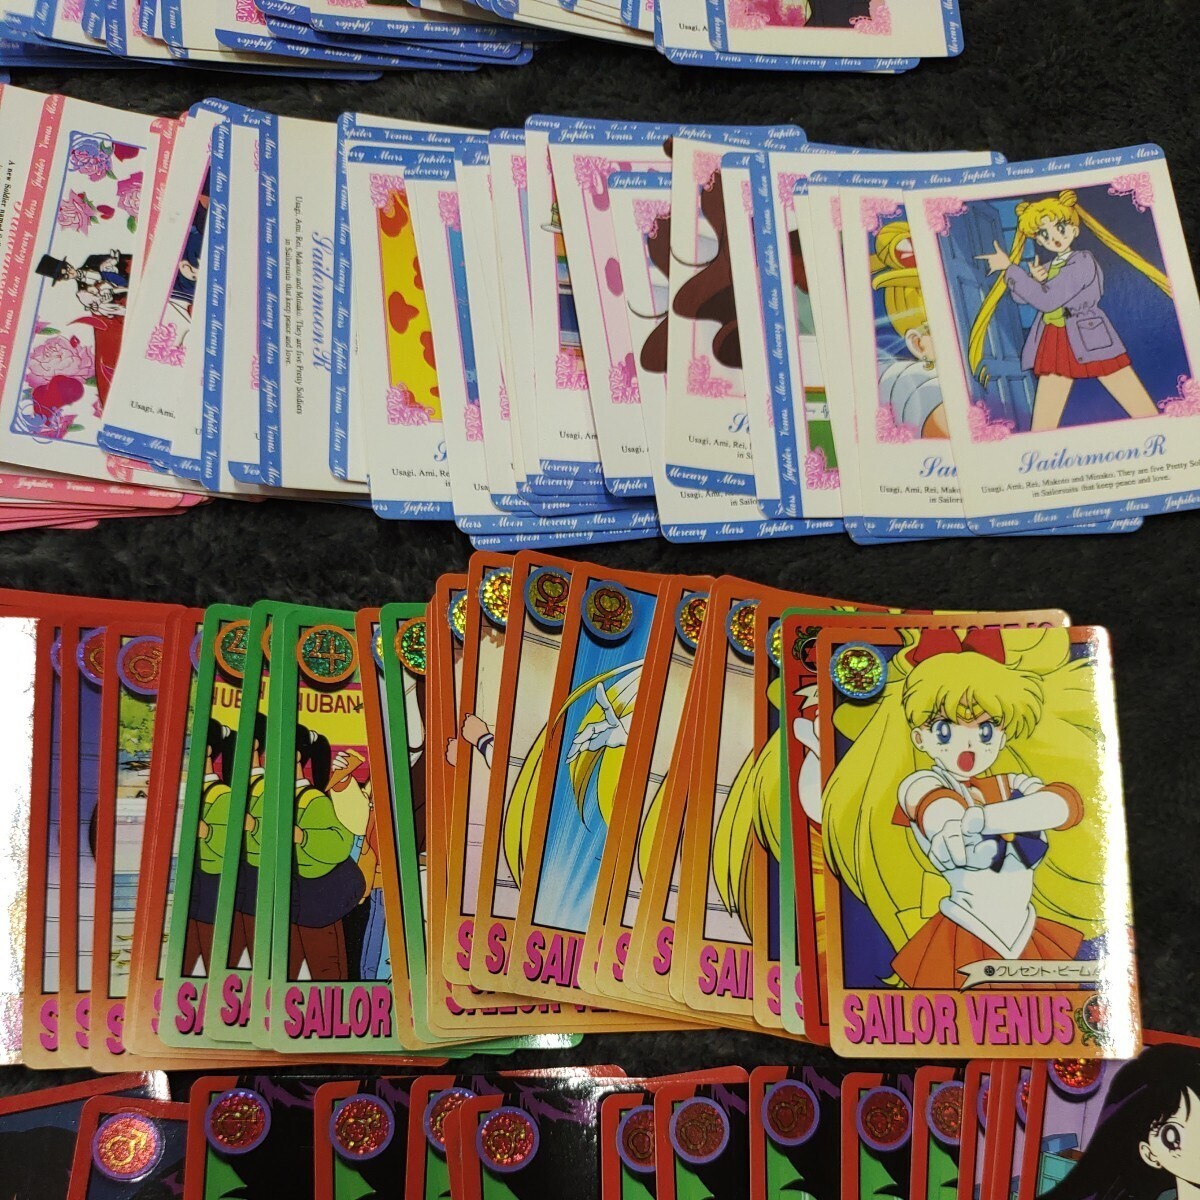 A05135 1 иен старт Прекрасная воительница Сейлор Мун Sailor Moon R Sailor Moon S Carddas продажа комплектом коллекционные карточки kila карта Amada 